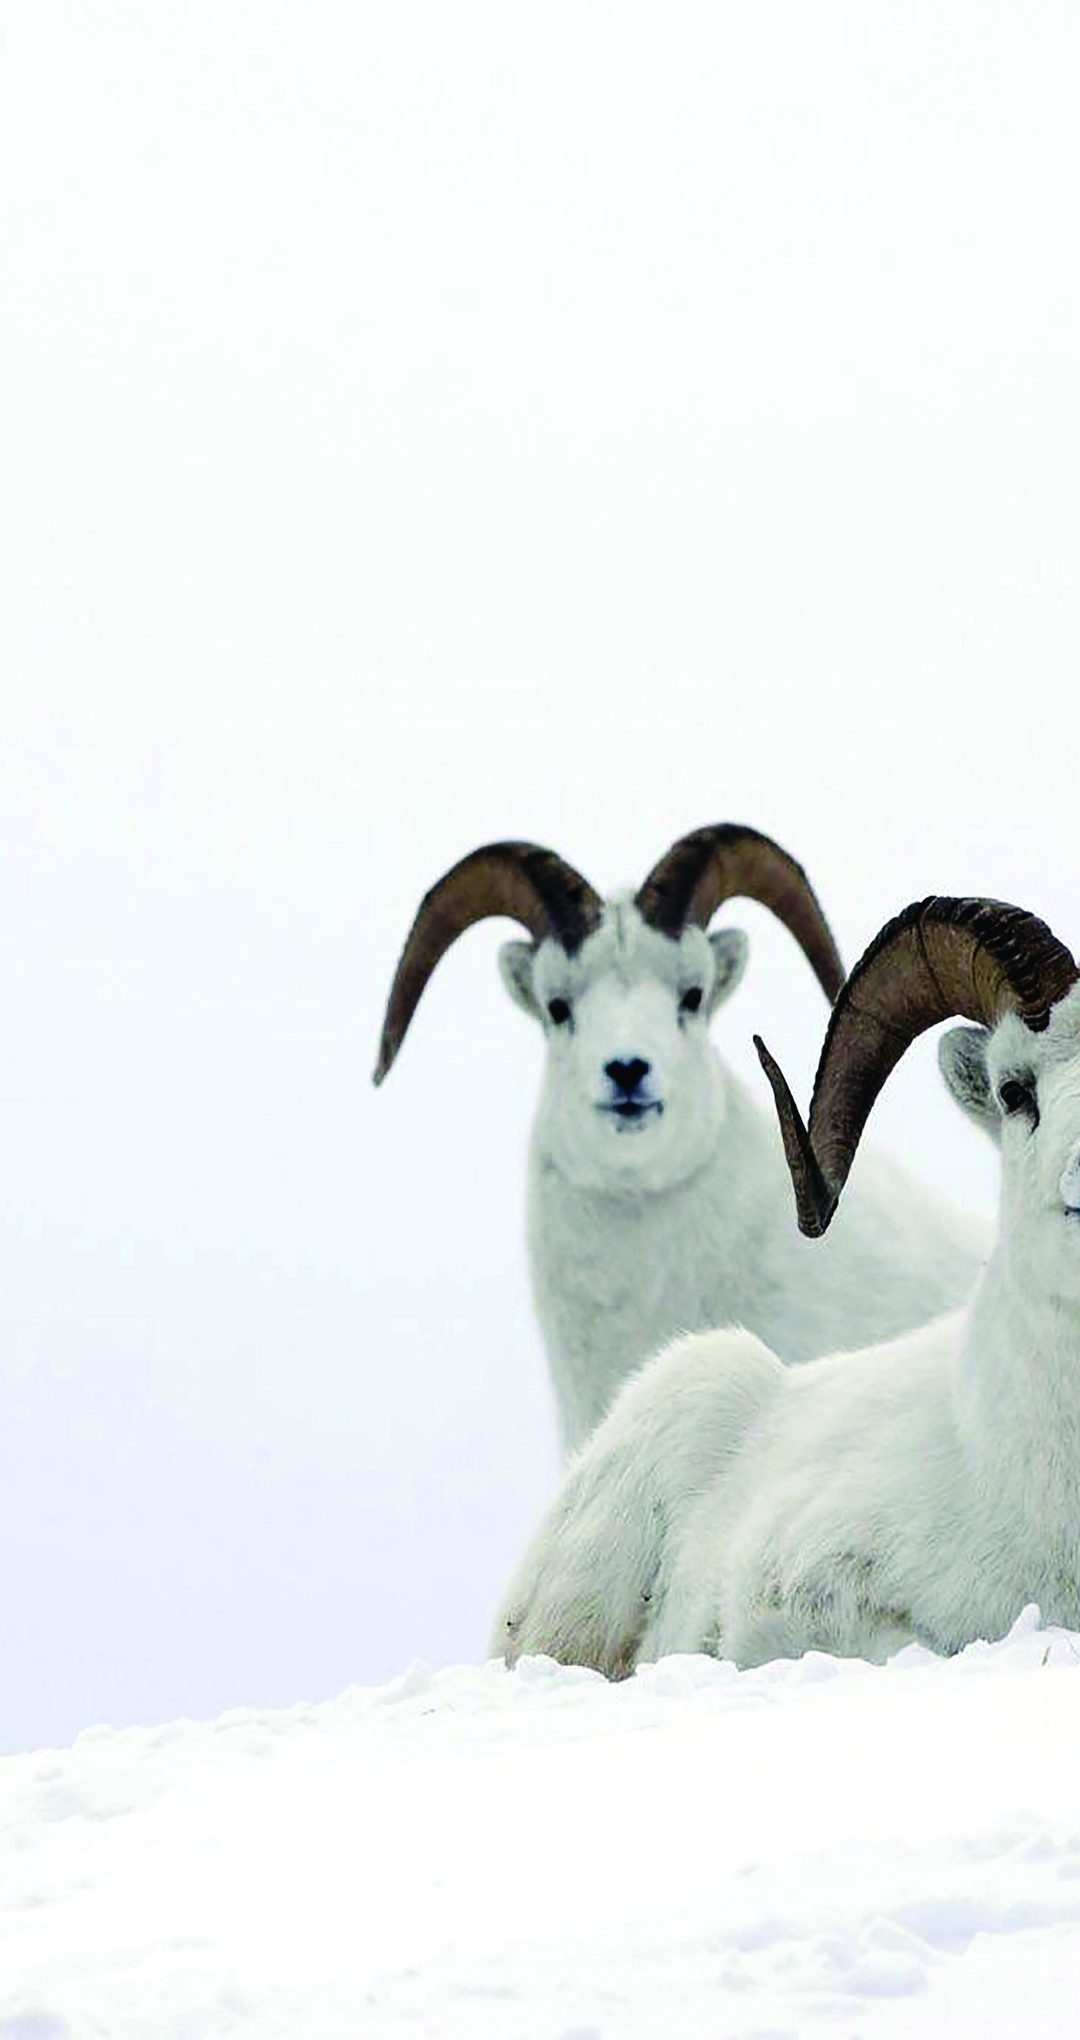 Image: Sheep, horns, mountain, snow